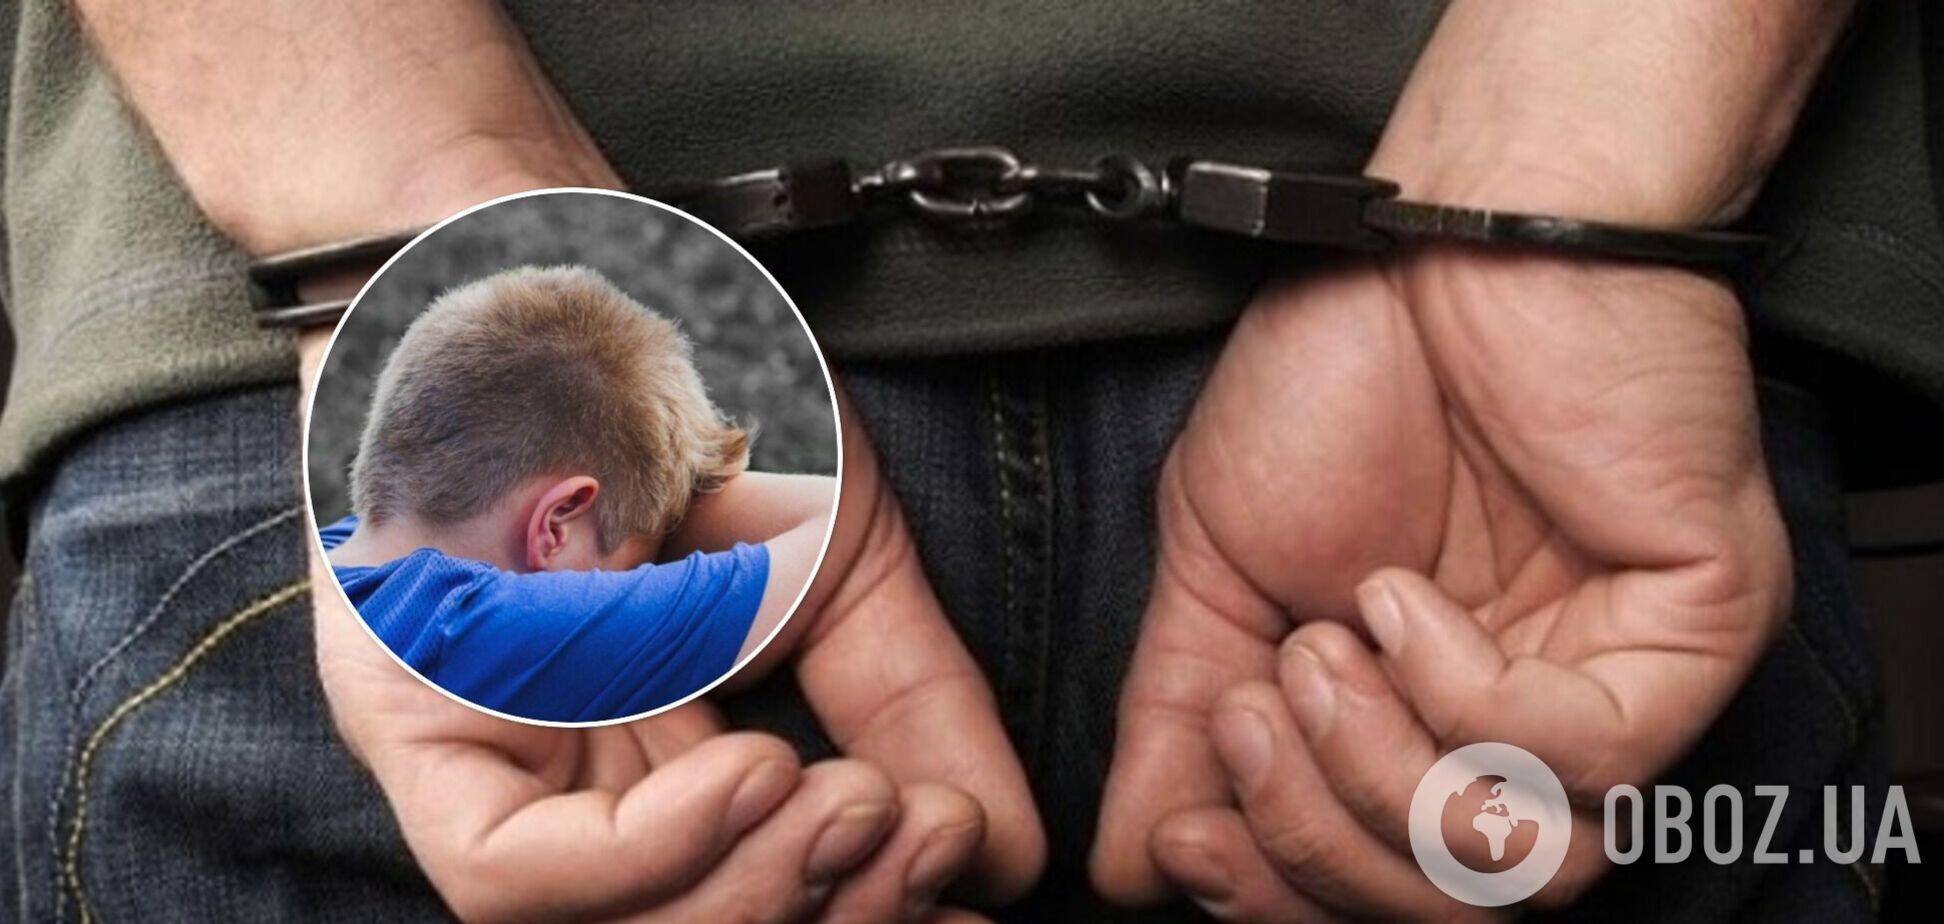 Под Житомиром задержали 25-летнего педофила, который поиздевался над ребенком